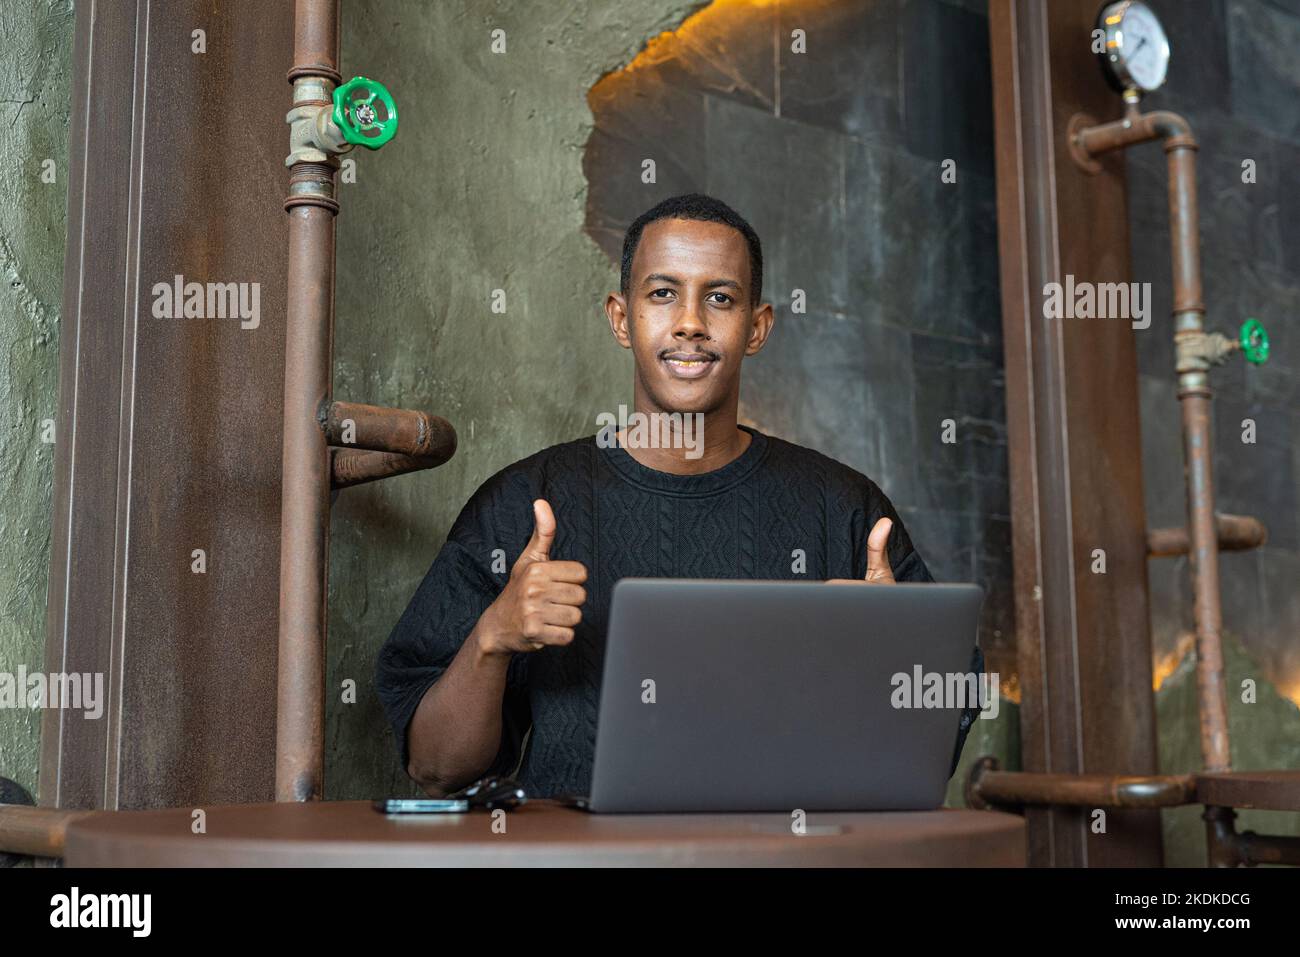 Porträt eines hübschen schwarzen Mannes, der in Innenräumen sitzt und einen Laptop benutzt Stockfoto